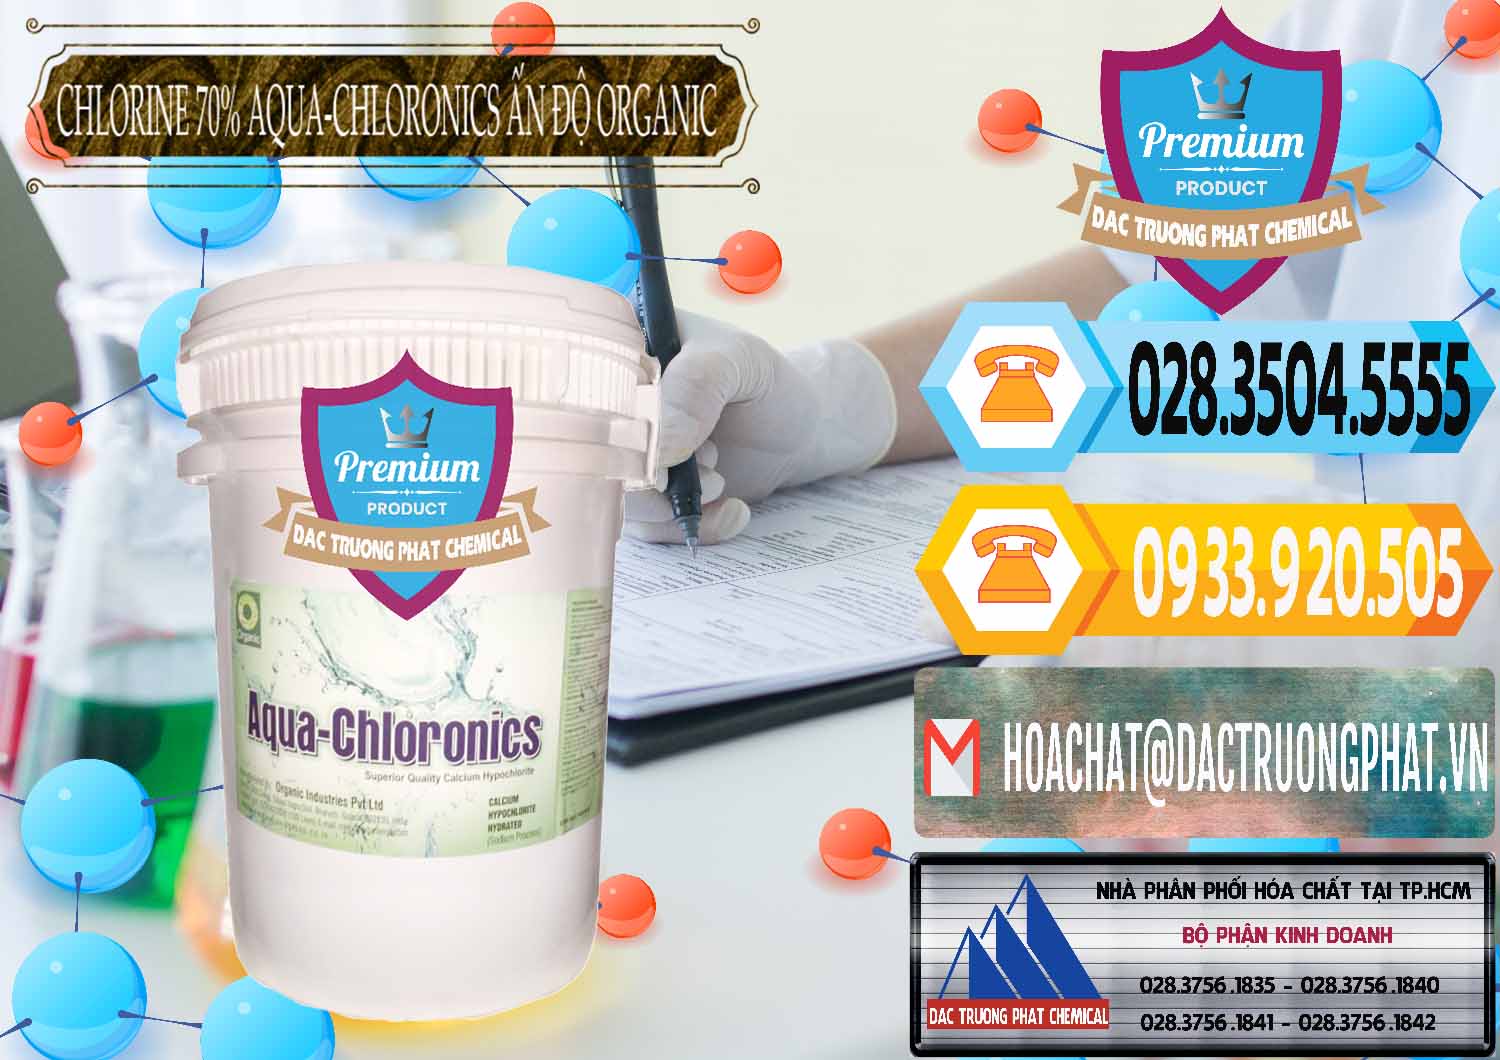 Bán Chlorine – Clorin 70% Aqua-Chloronics Ấn Độ Organic India - 0211 - Nơi cung cấp và kinh doanh hóa chất tại TP.HCM - hoachattayrua.net